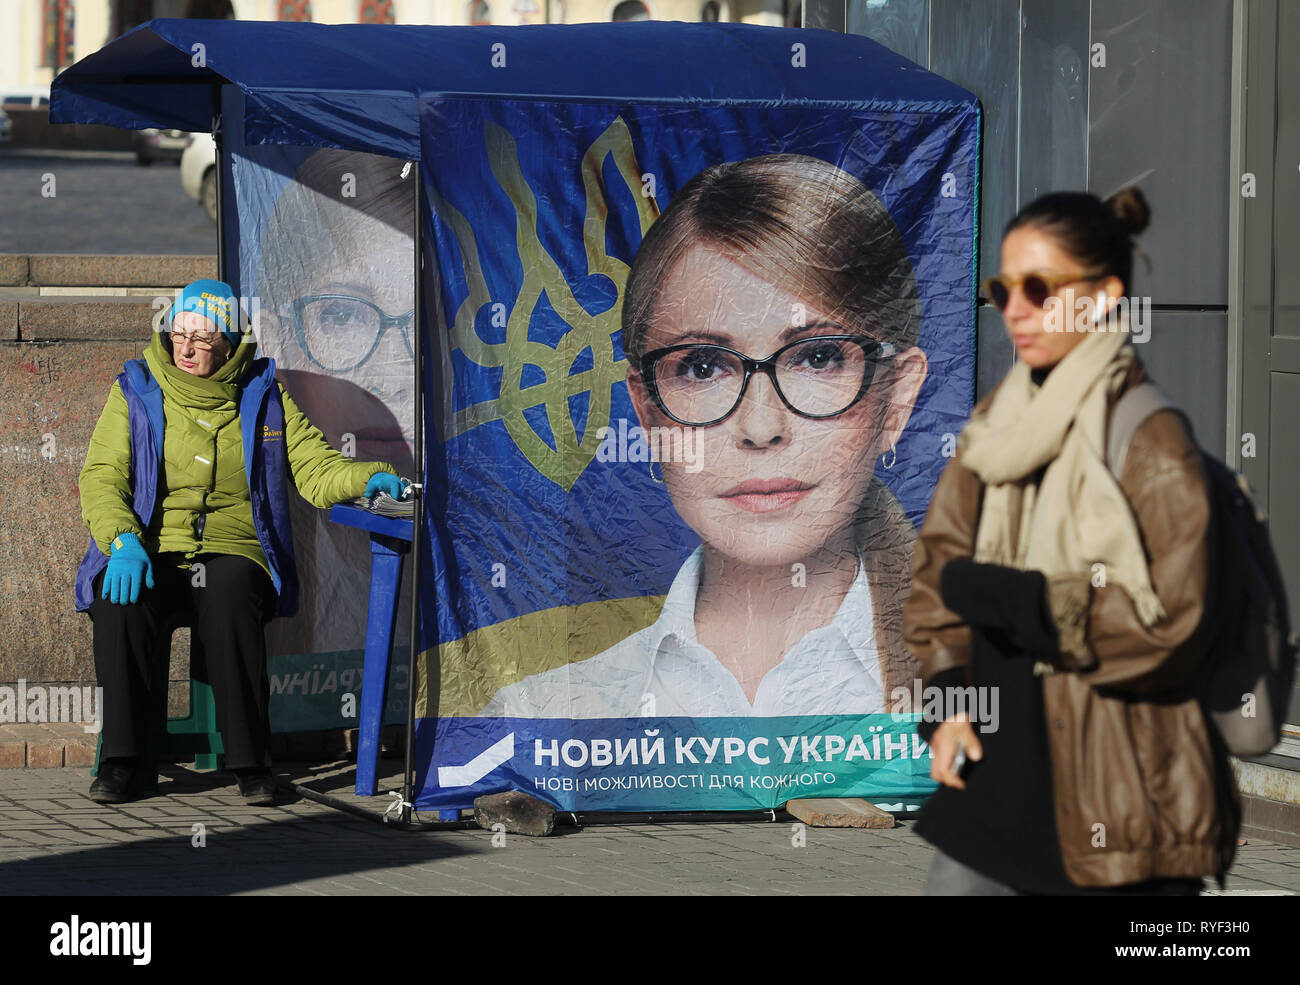 Les Ukrainiens sont vus en passant devant une tente de campagne de candidat à la présidence ukrainienne Ioulia Timochenko, au centre-ville de Kiev, Ukraine. Les prochaines élections présidentielles en Ukraine aura lieu le 31 mars 2019. Banque D'Images